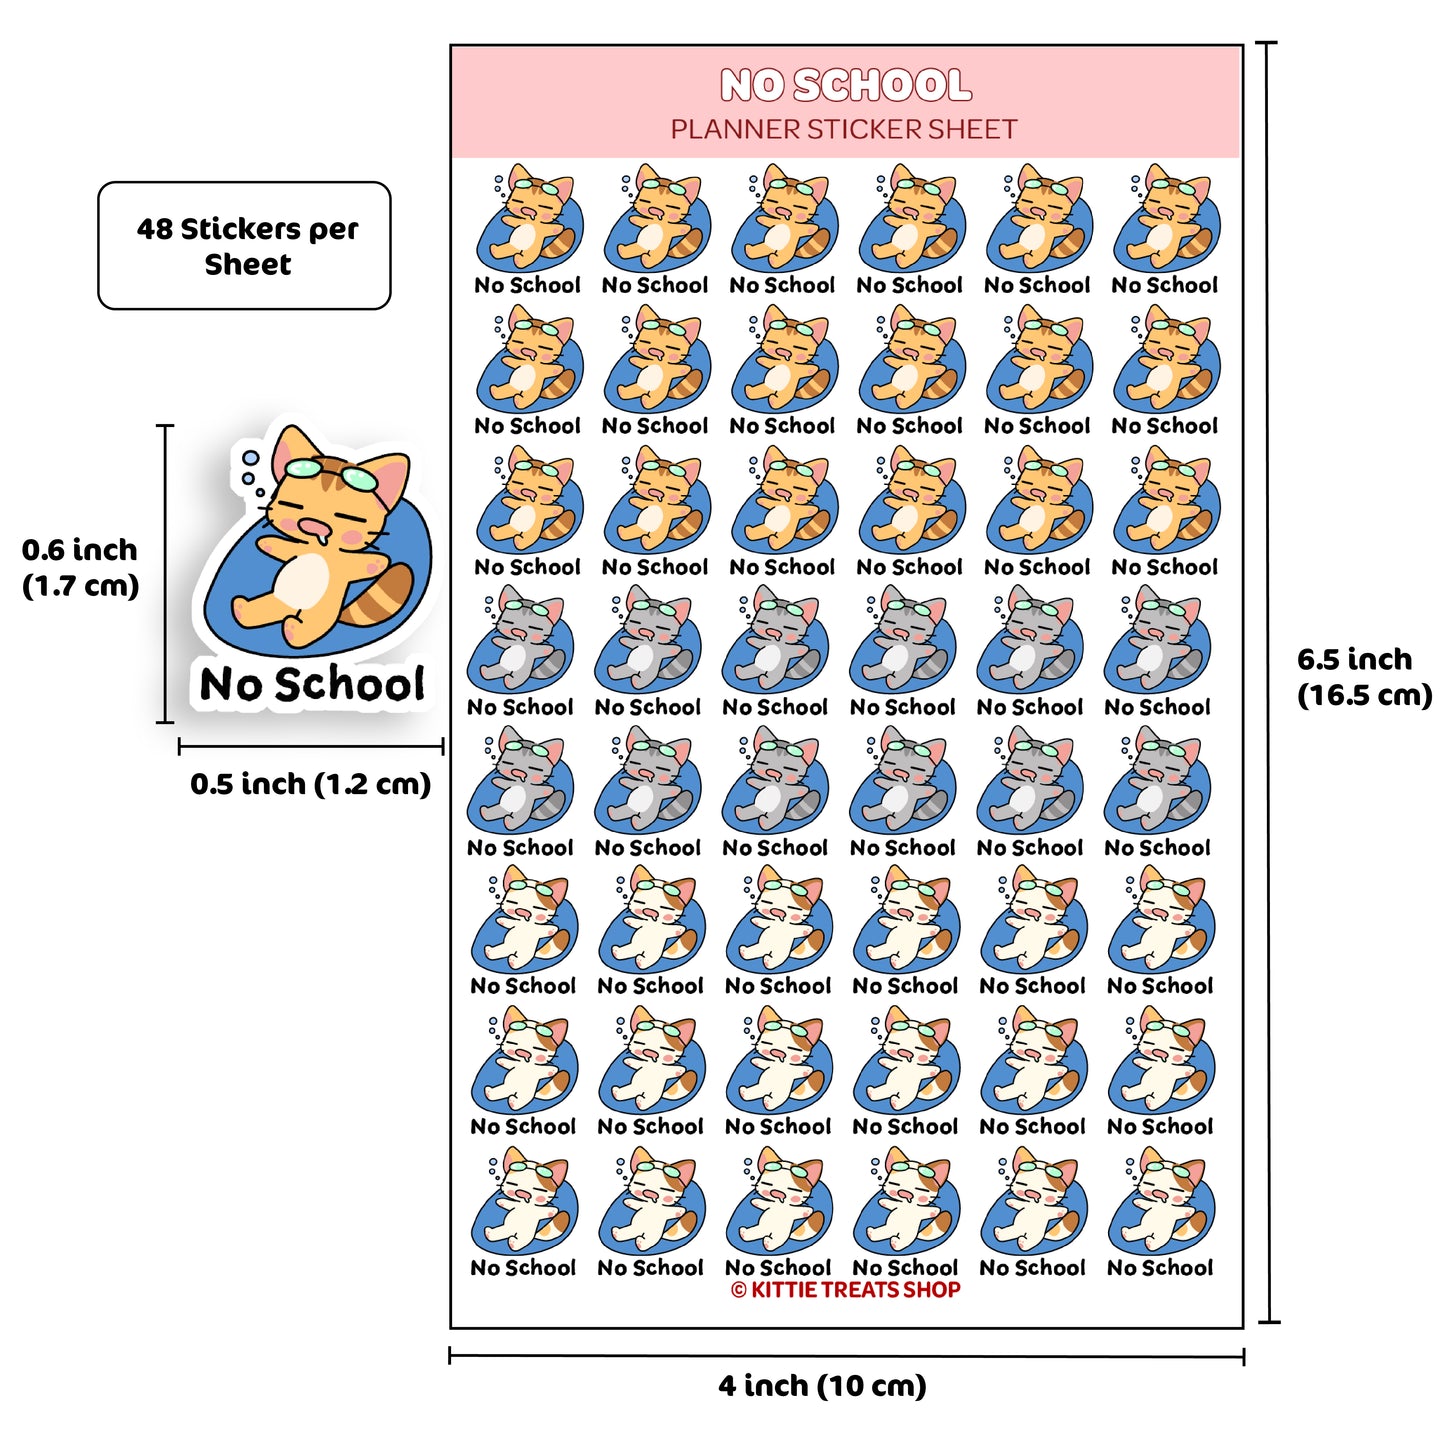 No School Planner Sticker Sheet